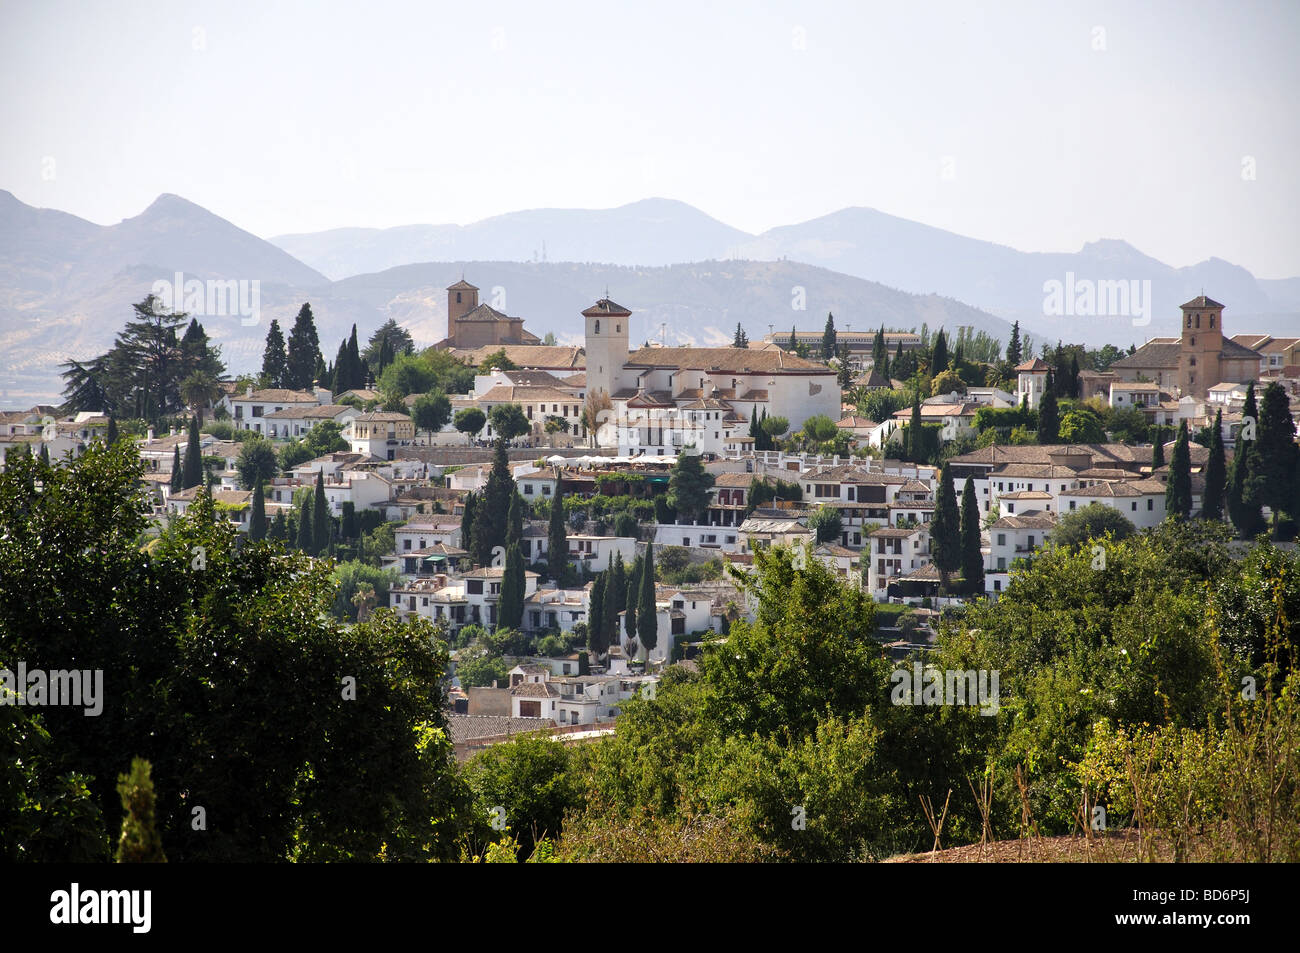 View from The Palacio de Generalife, La Alhambra, Granada, Granada Province, Andalusia, Spain Stock Photo